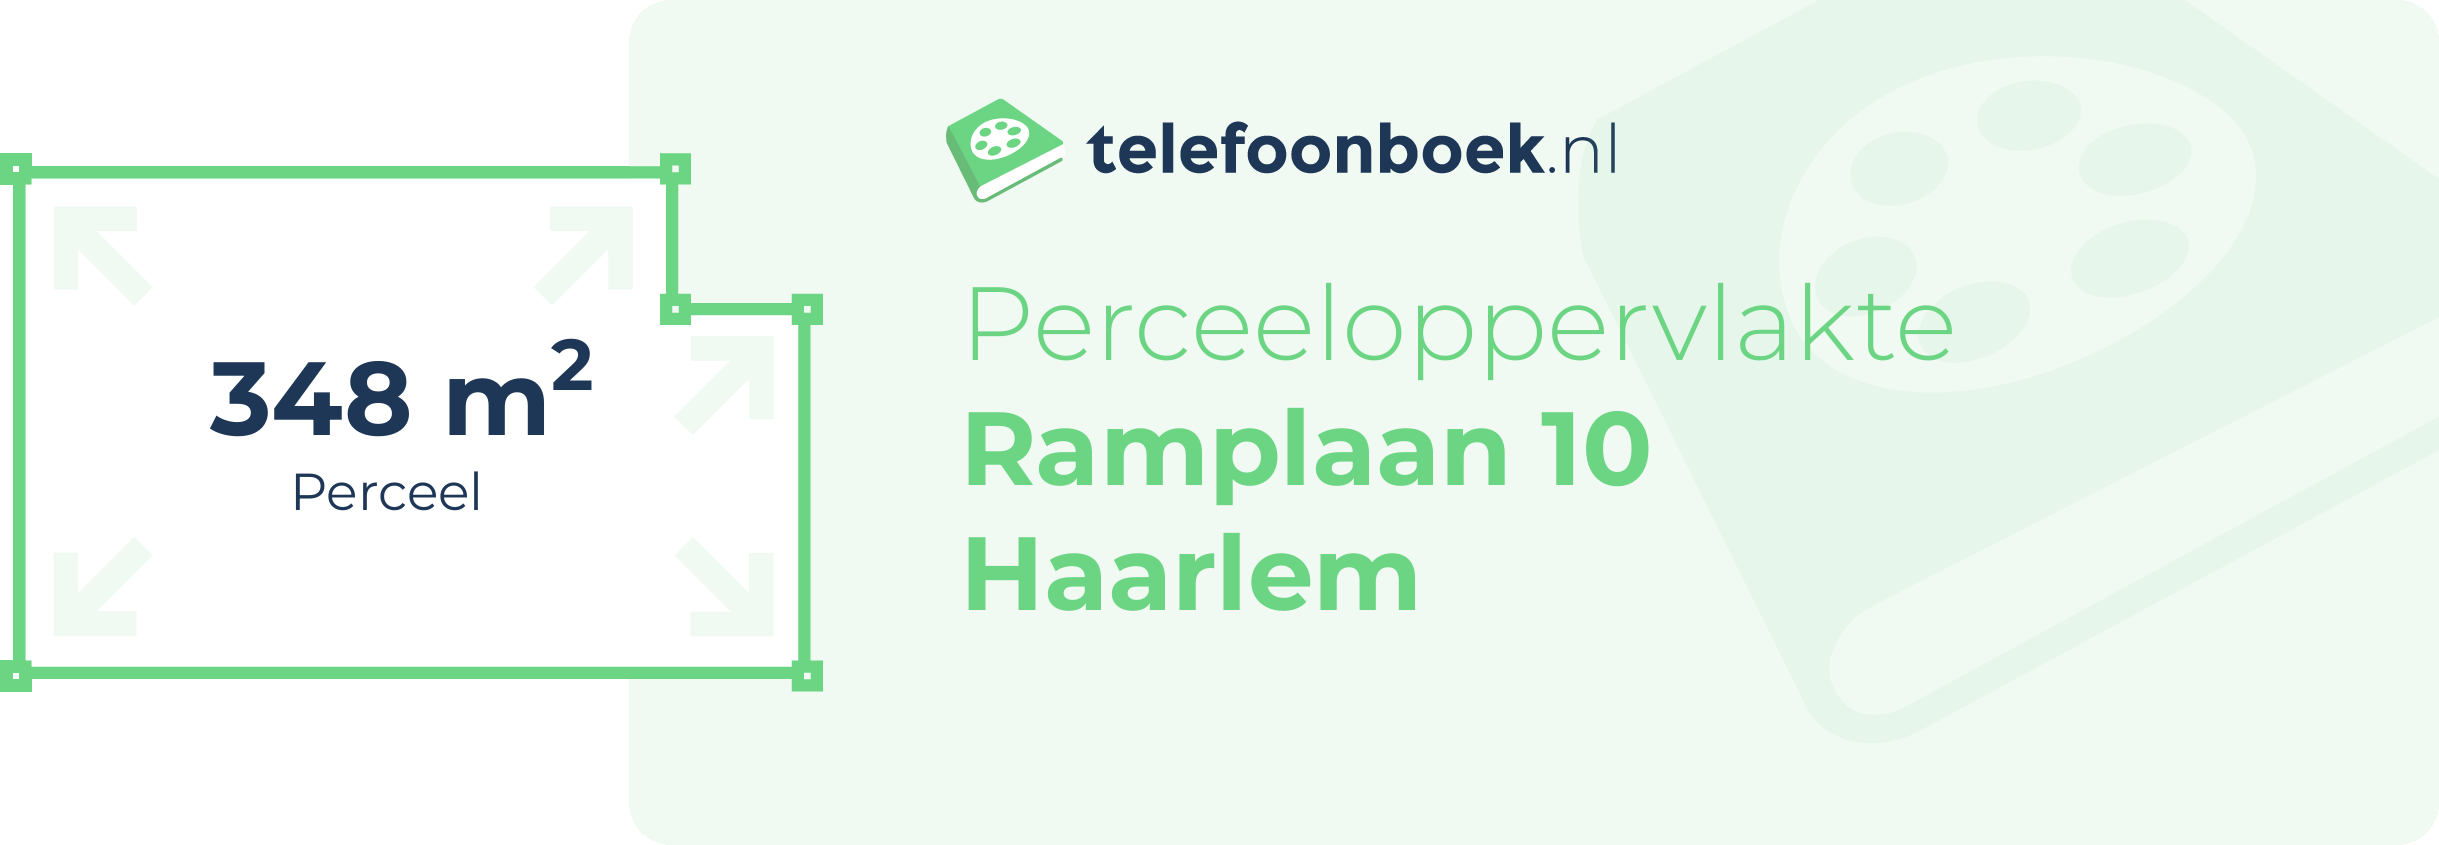 Perceeloppervlakte Ramplaan 10 Haarlem